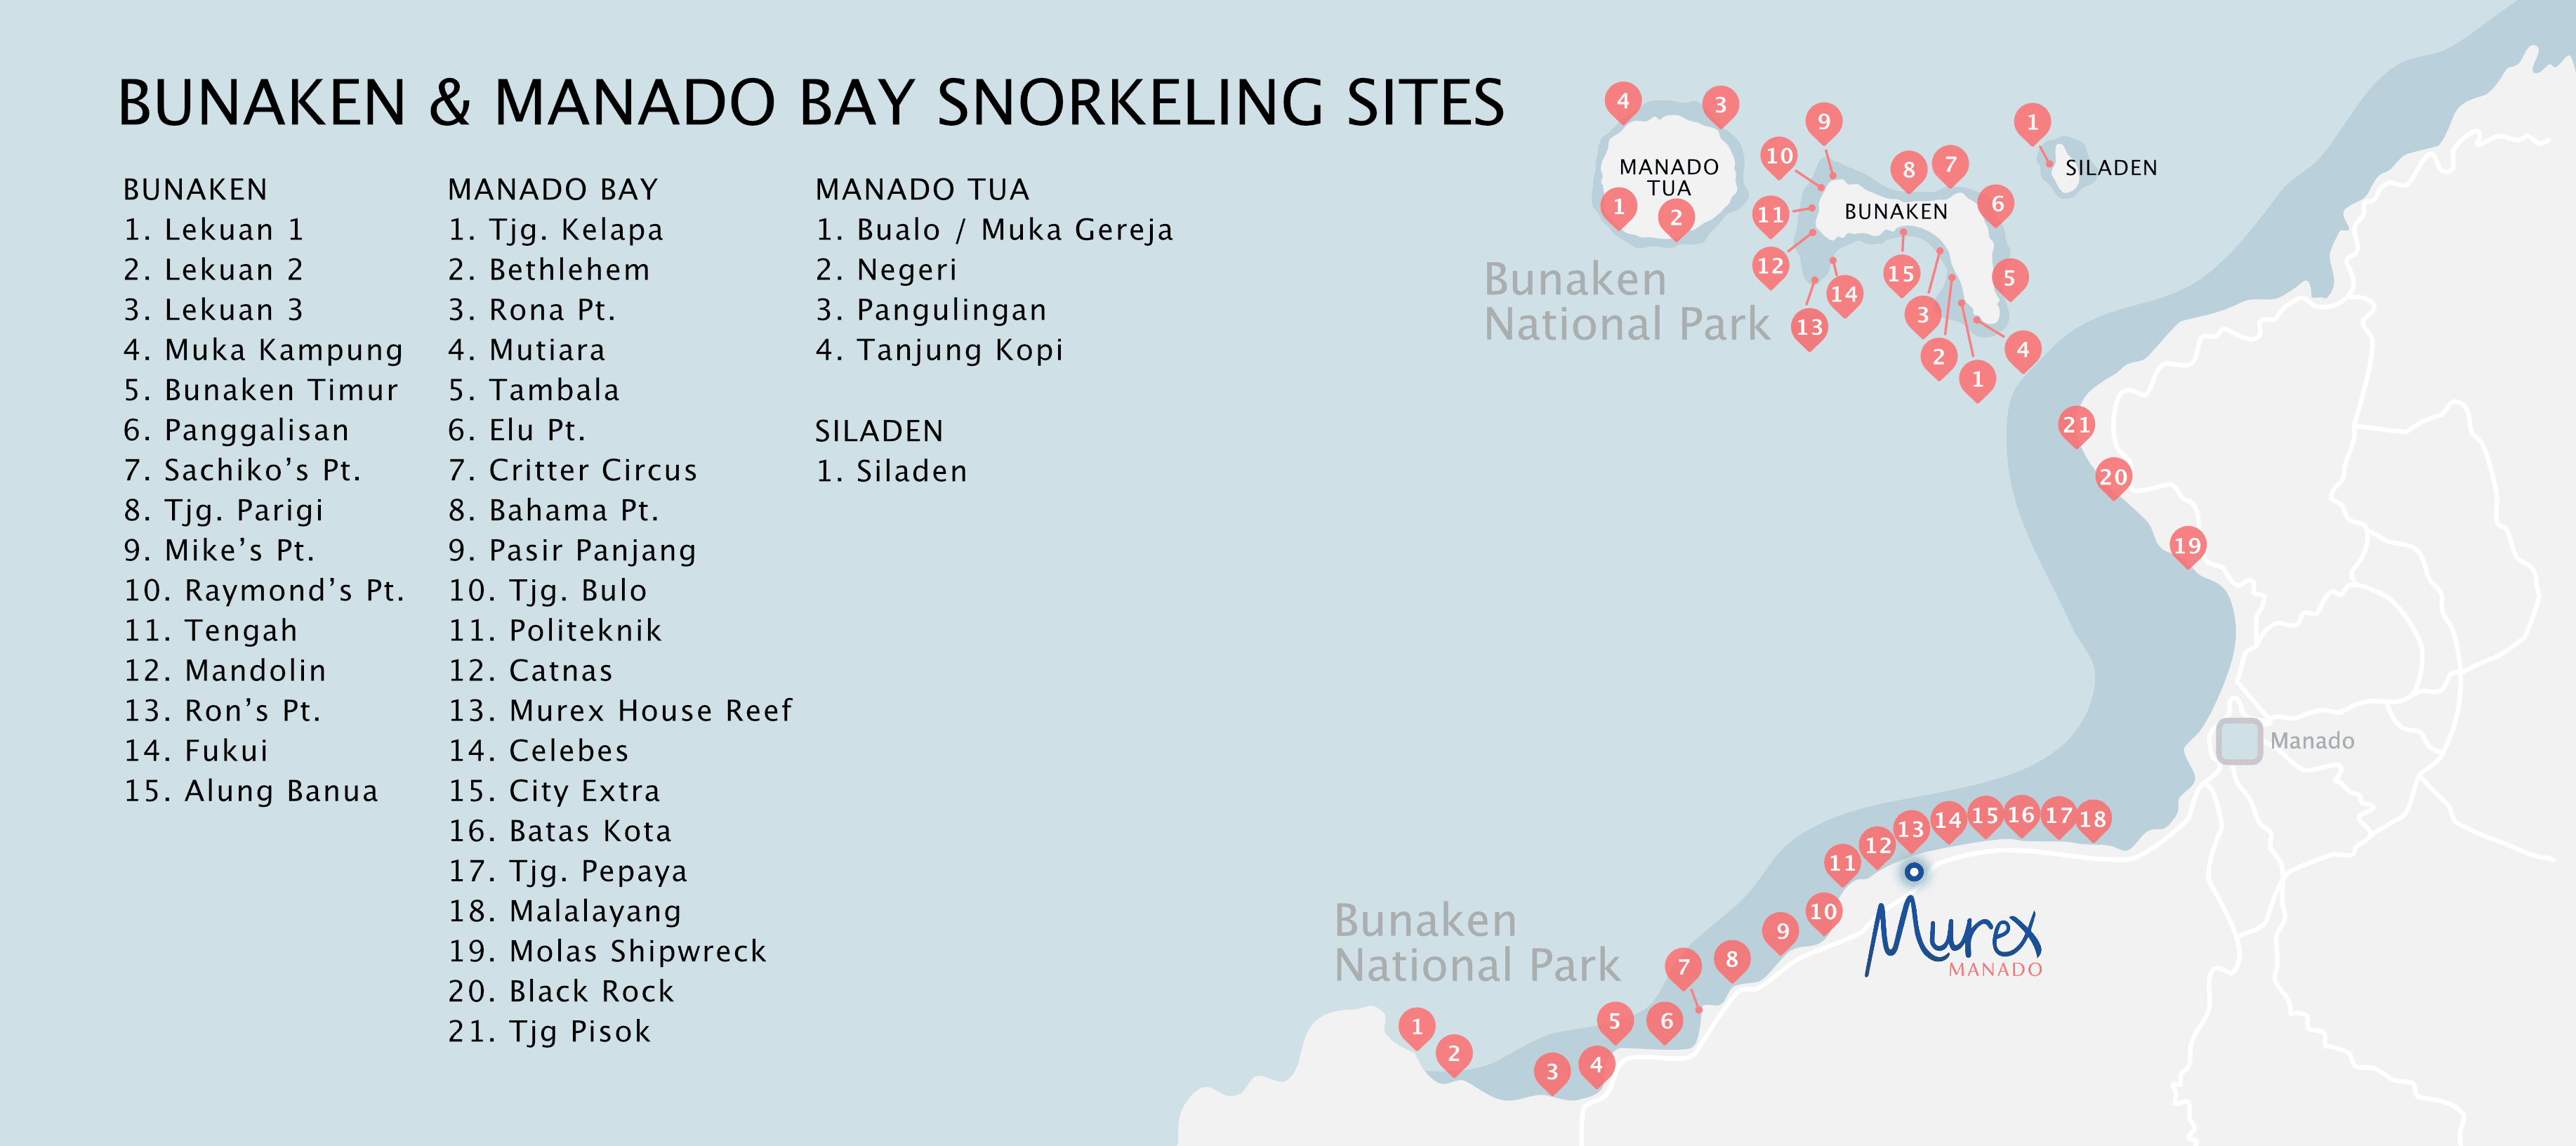 Bunaken & Manado Bay snorkeling sites